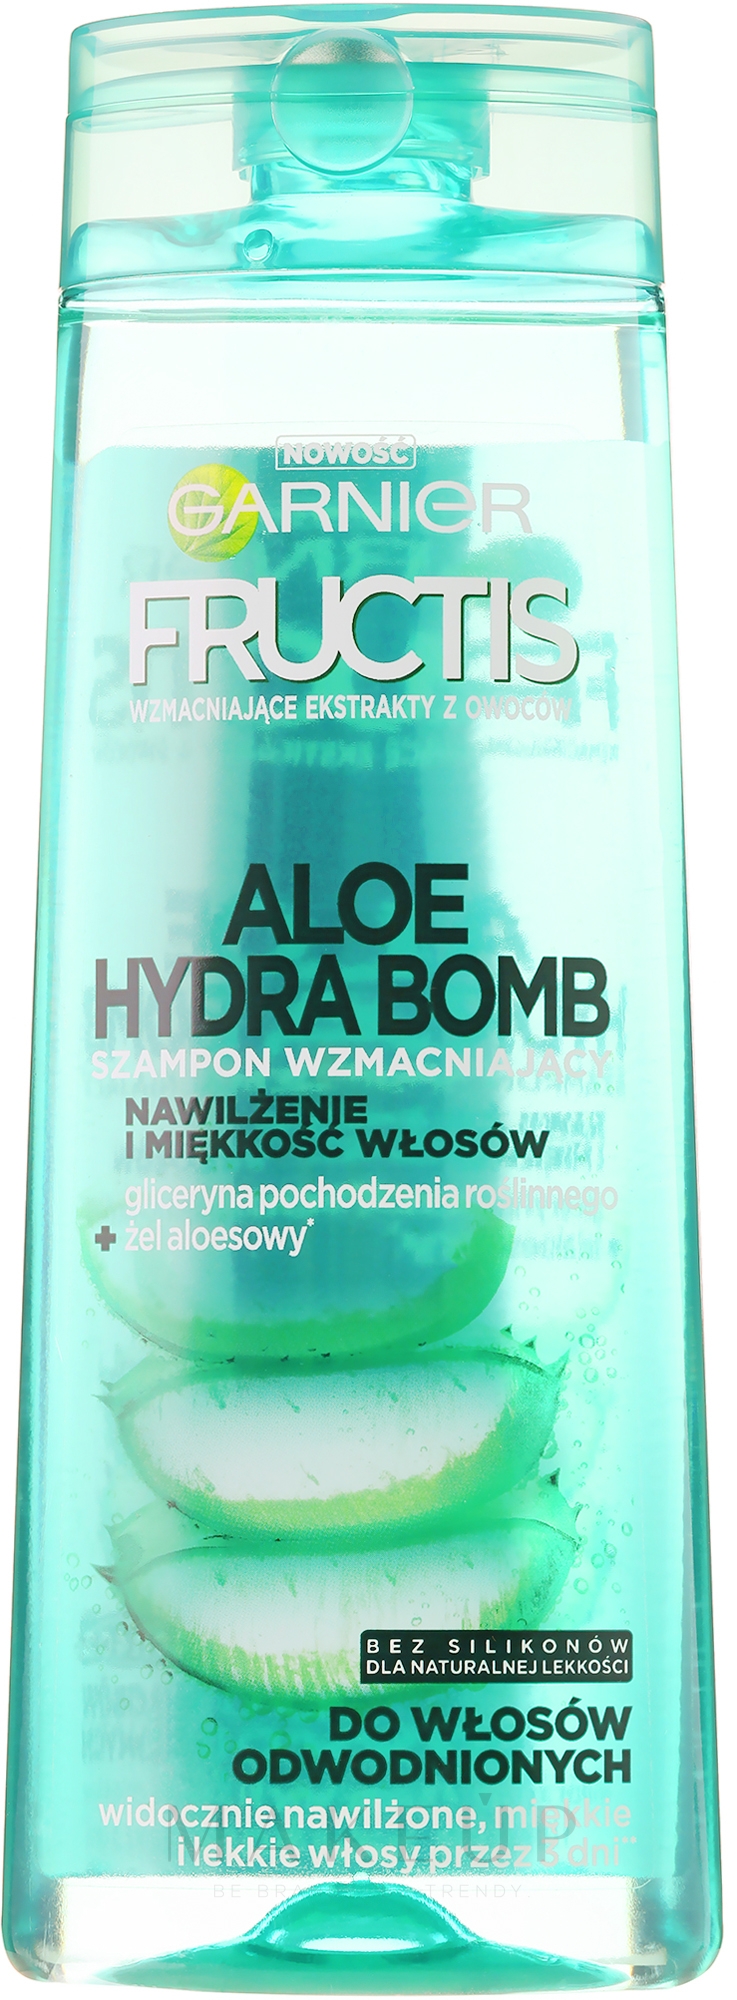 Kräftigendes Shampoo Aloe Hydra Bomb - Garnier Fructis Aloe Hydra Bomb Shampoo — Foto 250 ml